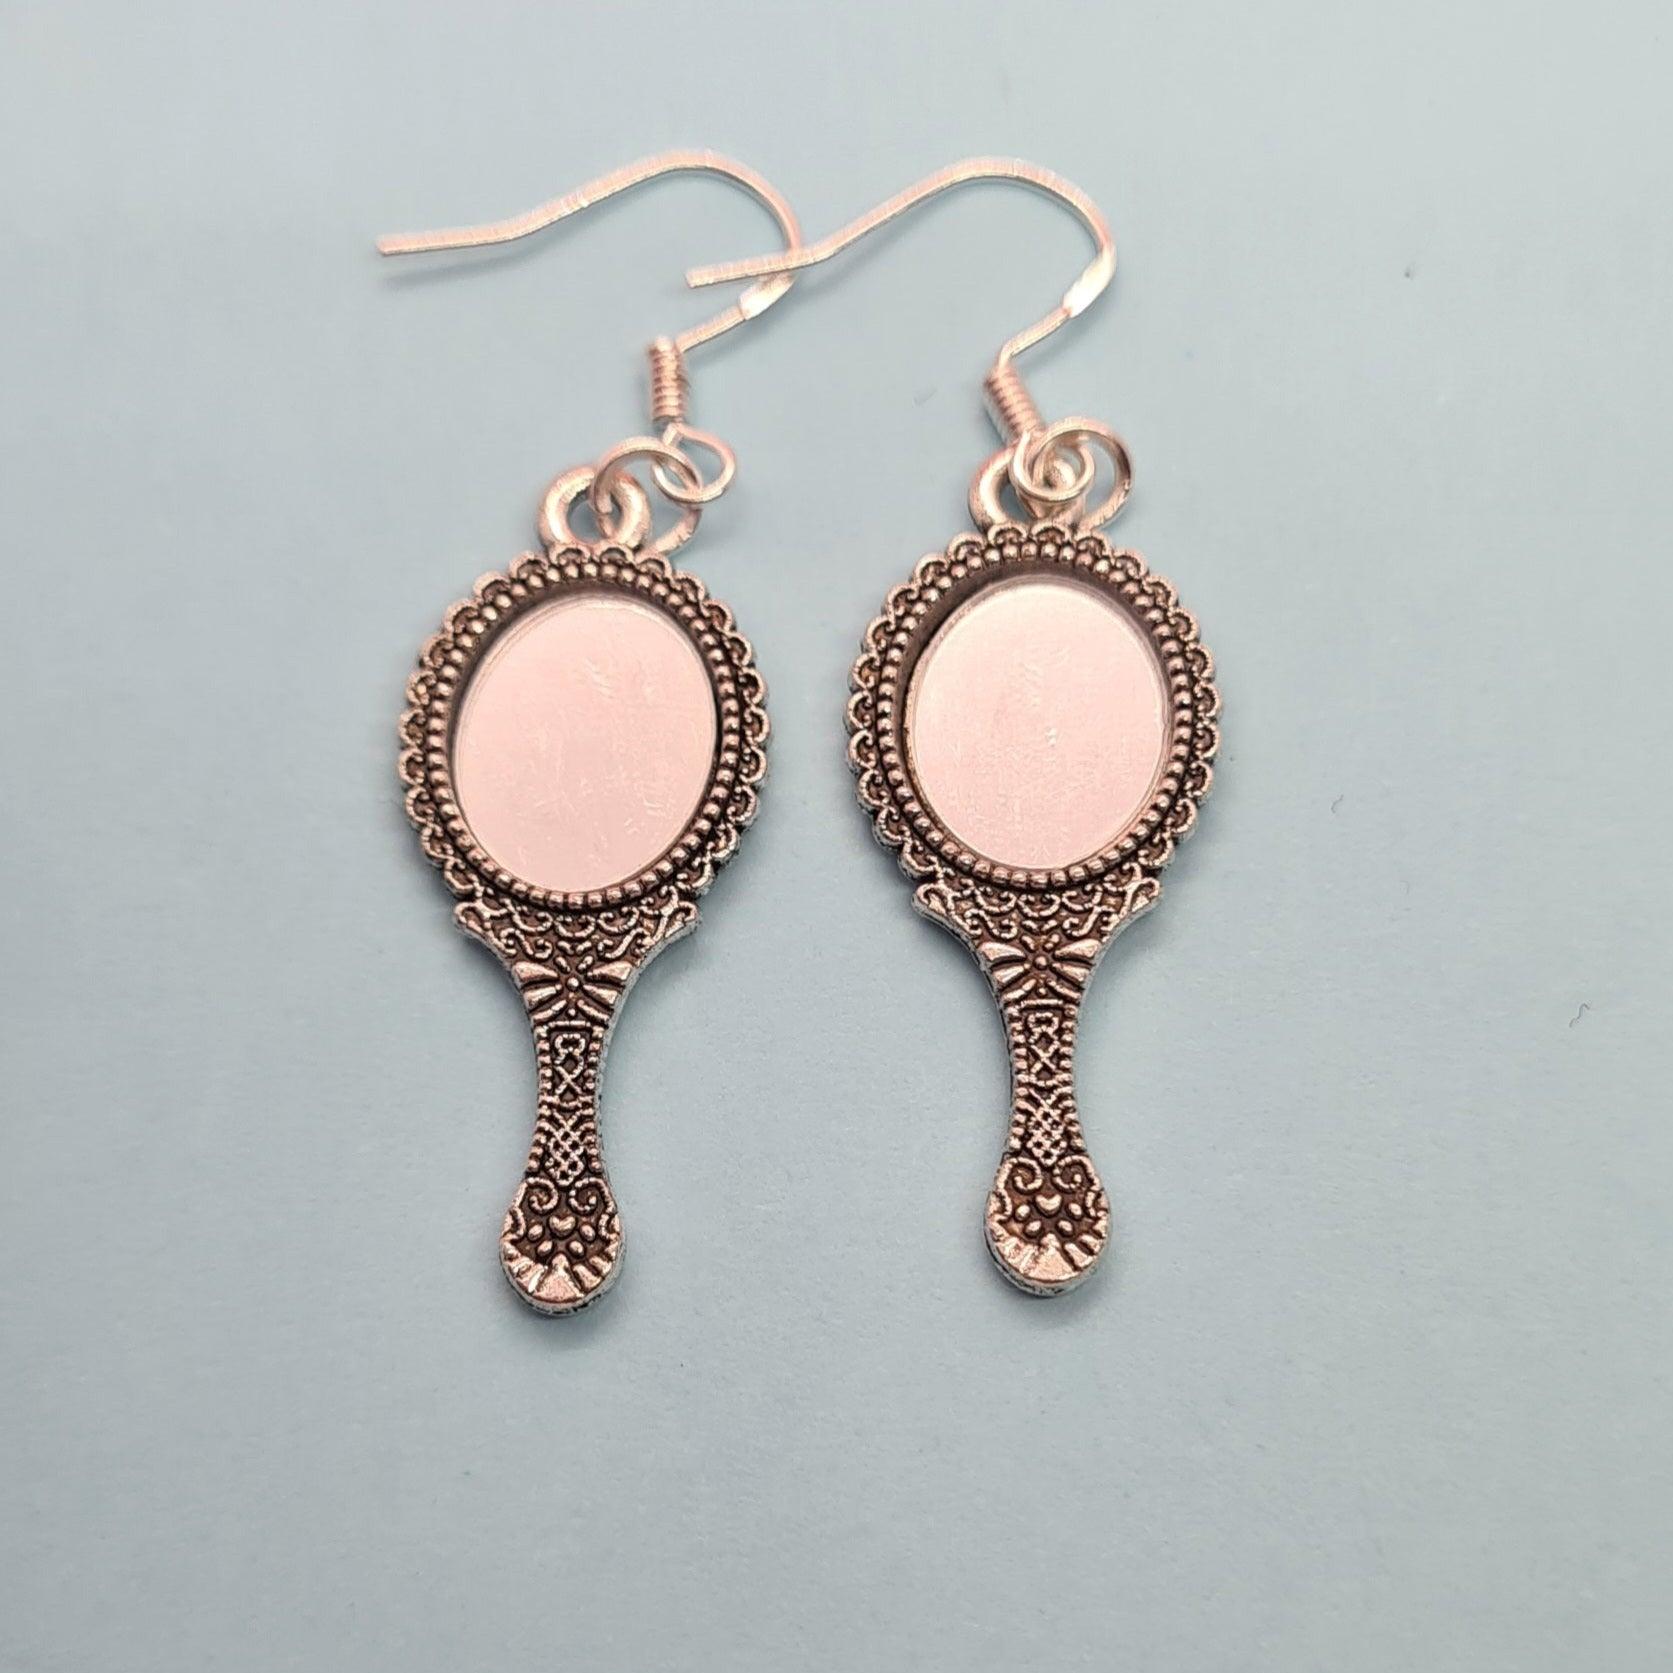 Mirror mirror earrings - Strawberry Moon Jewellery 